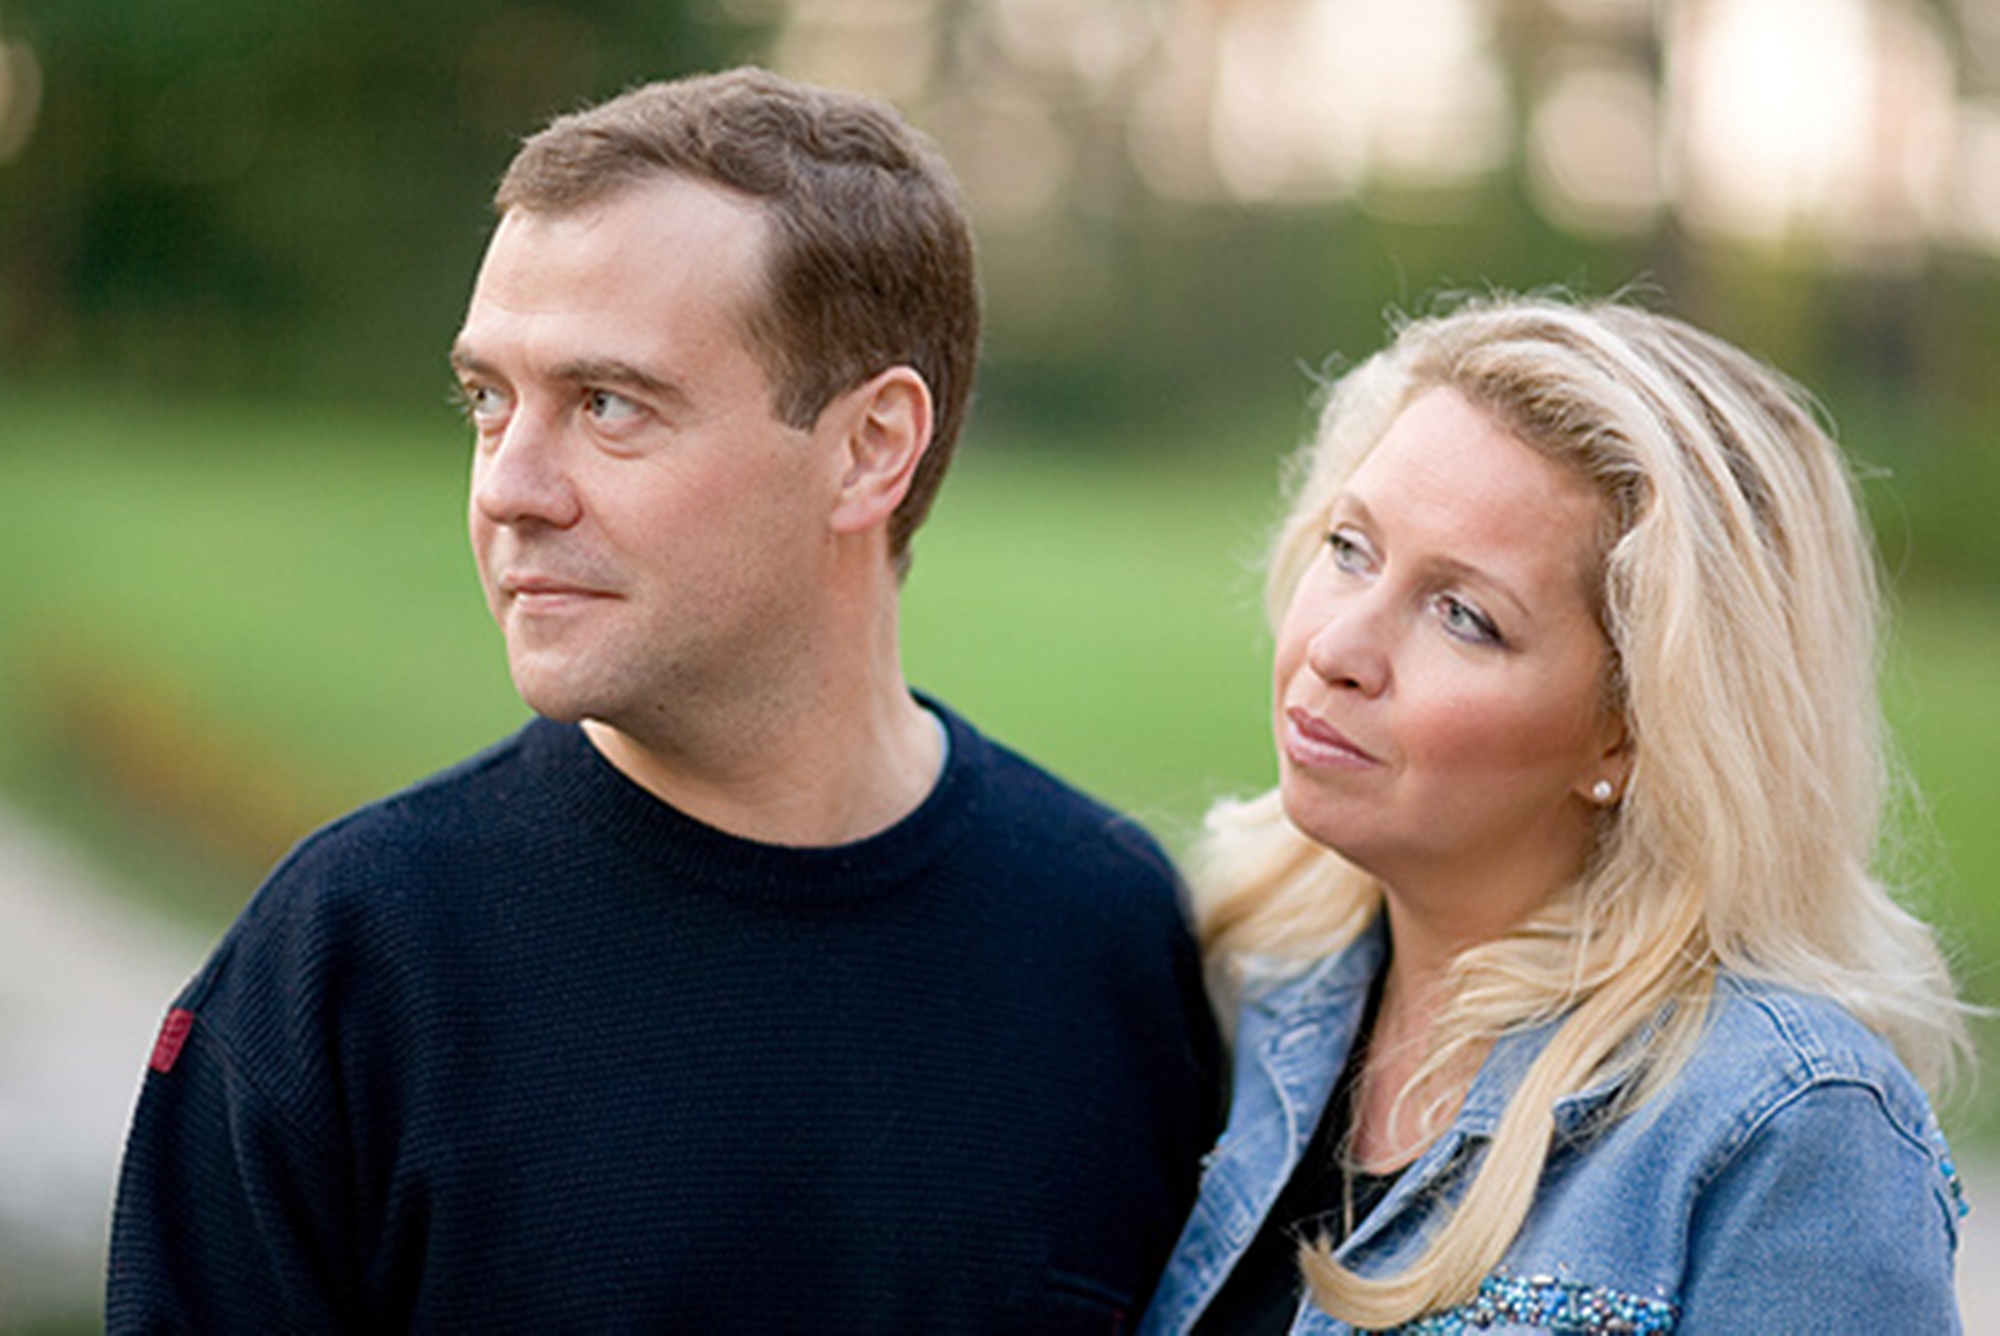 Medvedev həyat yoldaşından boşanma iddialarına aydınlıq gətirdi - VİDEO